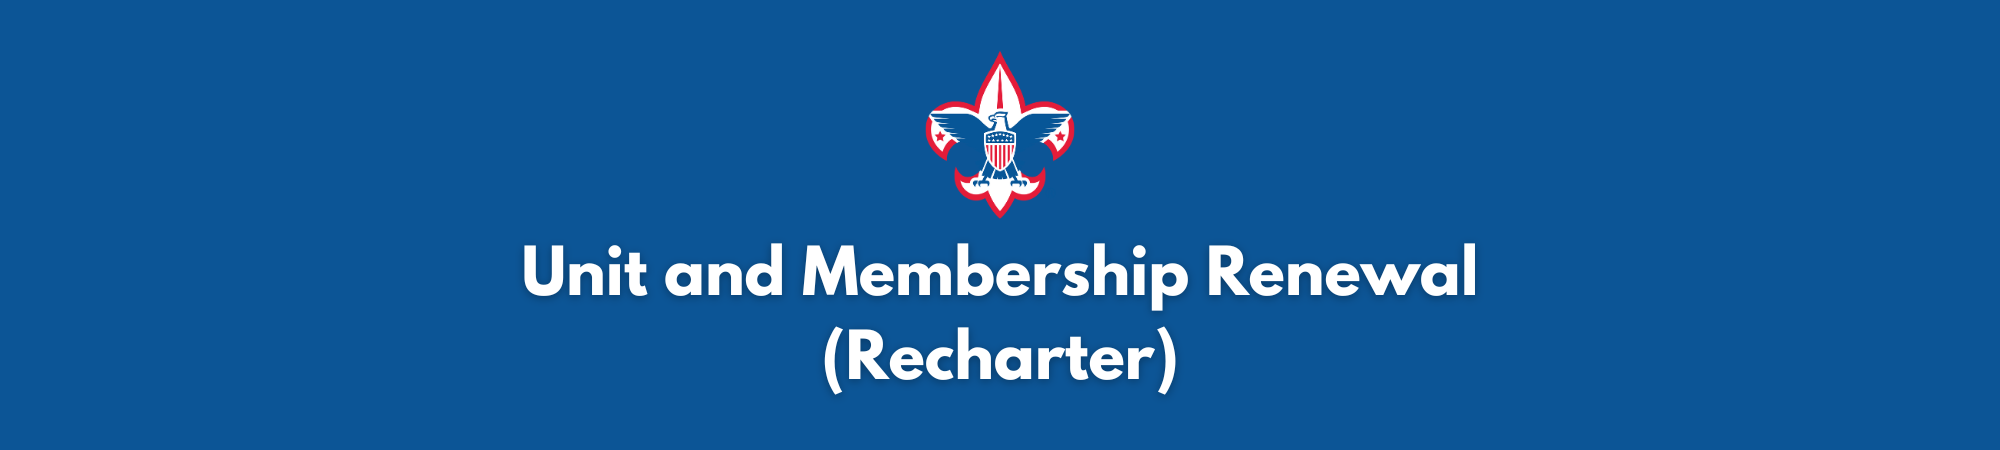 Unit and Membership Renewal